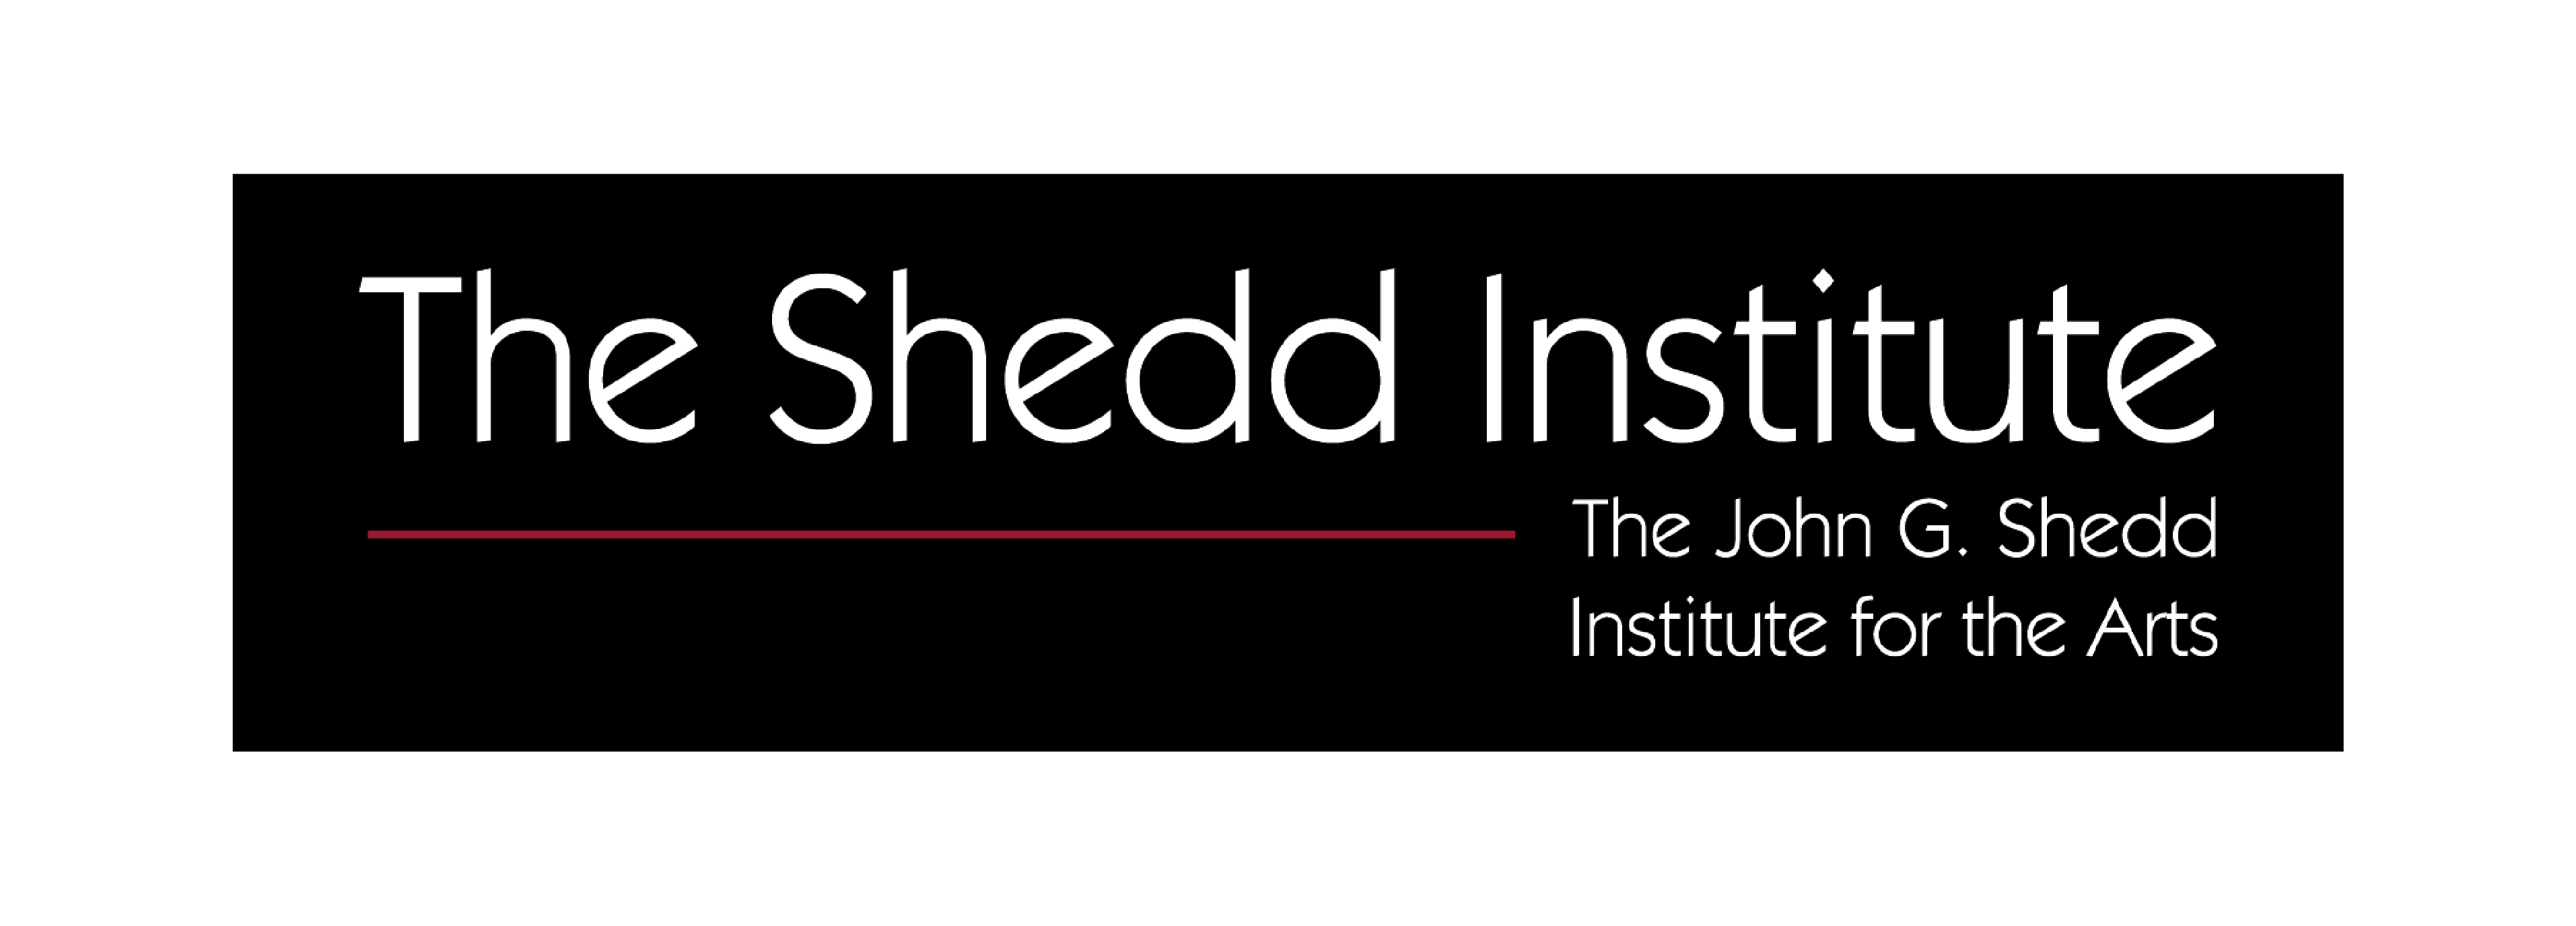 The Shedd Institute